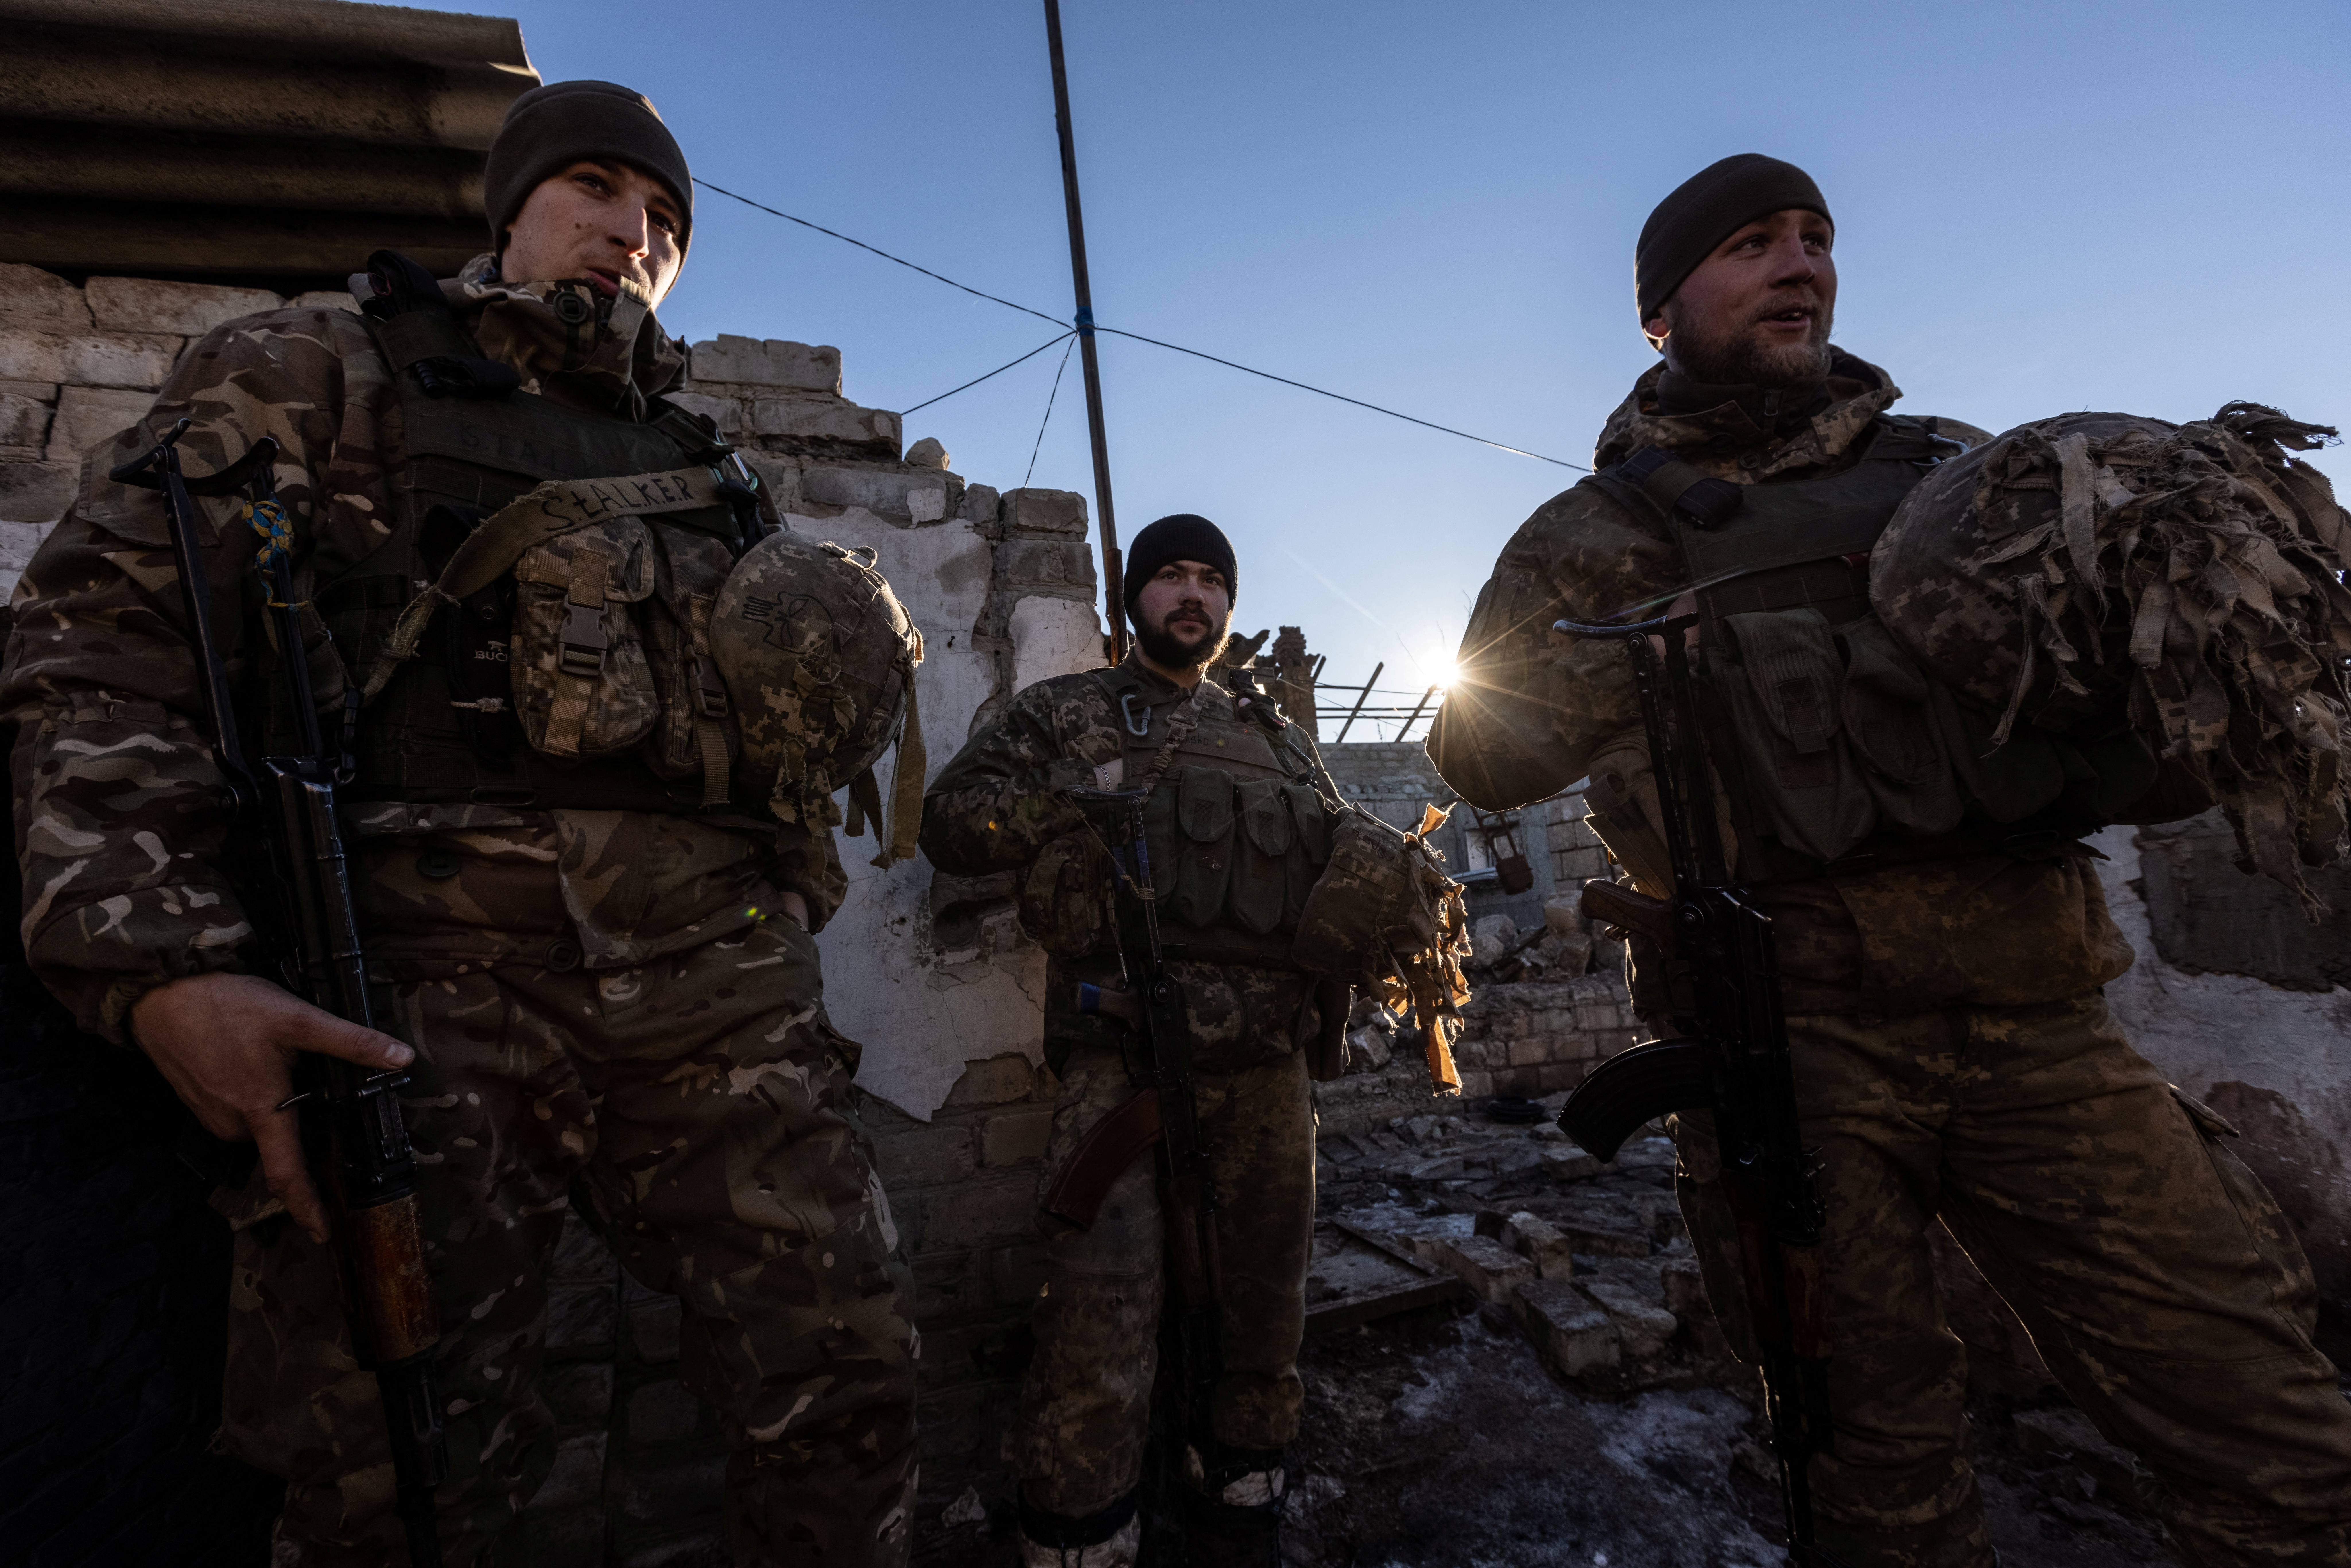 Foto de archivo: Soldados ucranianos son vistos en posiciones de combate cerca de la línea de separación de los rebeldes apoyados por Rusia en la región de Donetsk, Ucrania, el 8 de enero de 2022 (REUTERS/Andriy Dubchak)